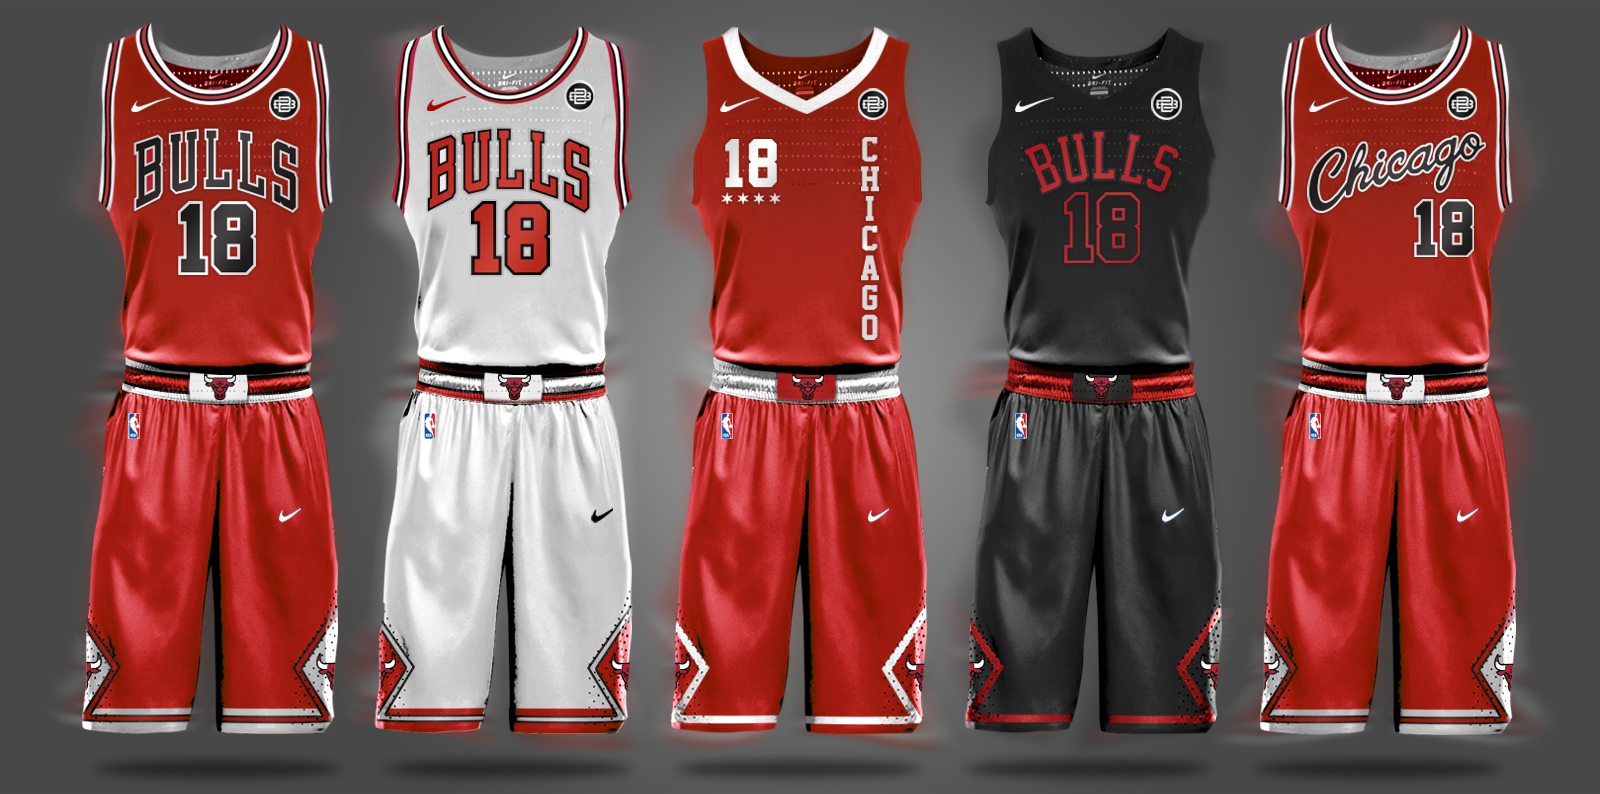 bulls jerseys 2020